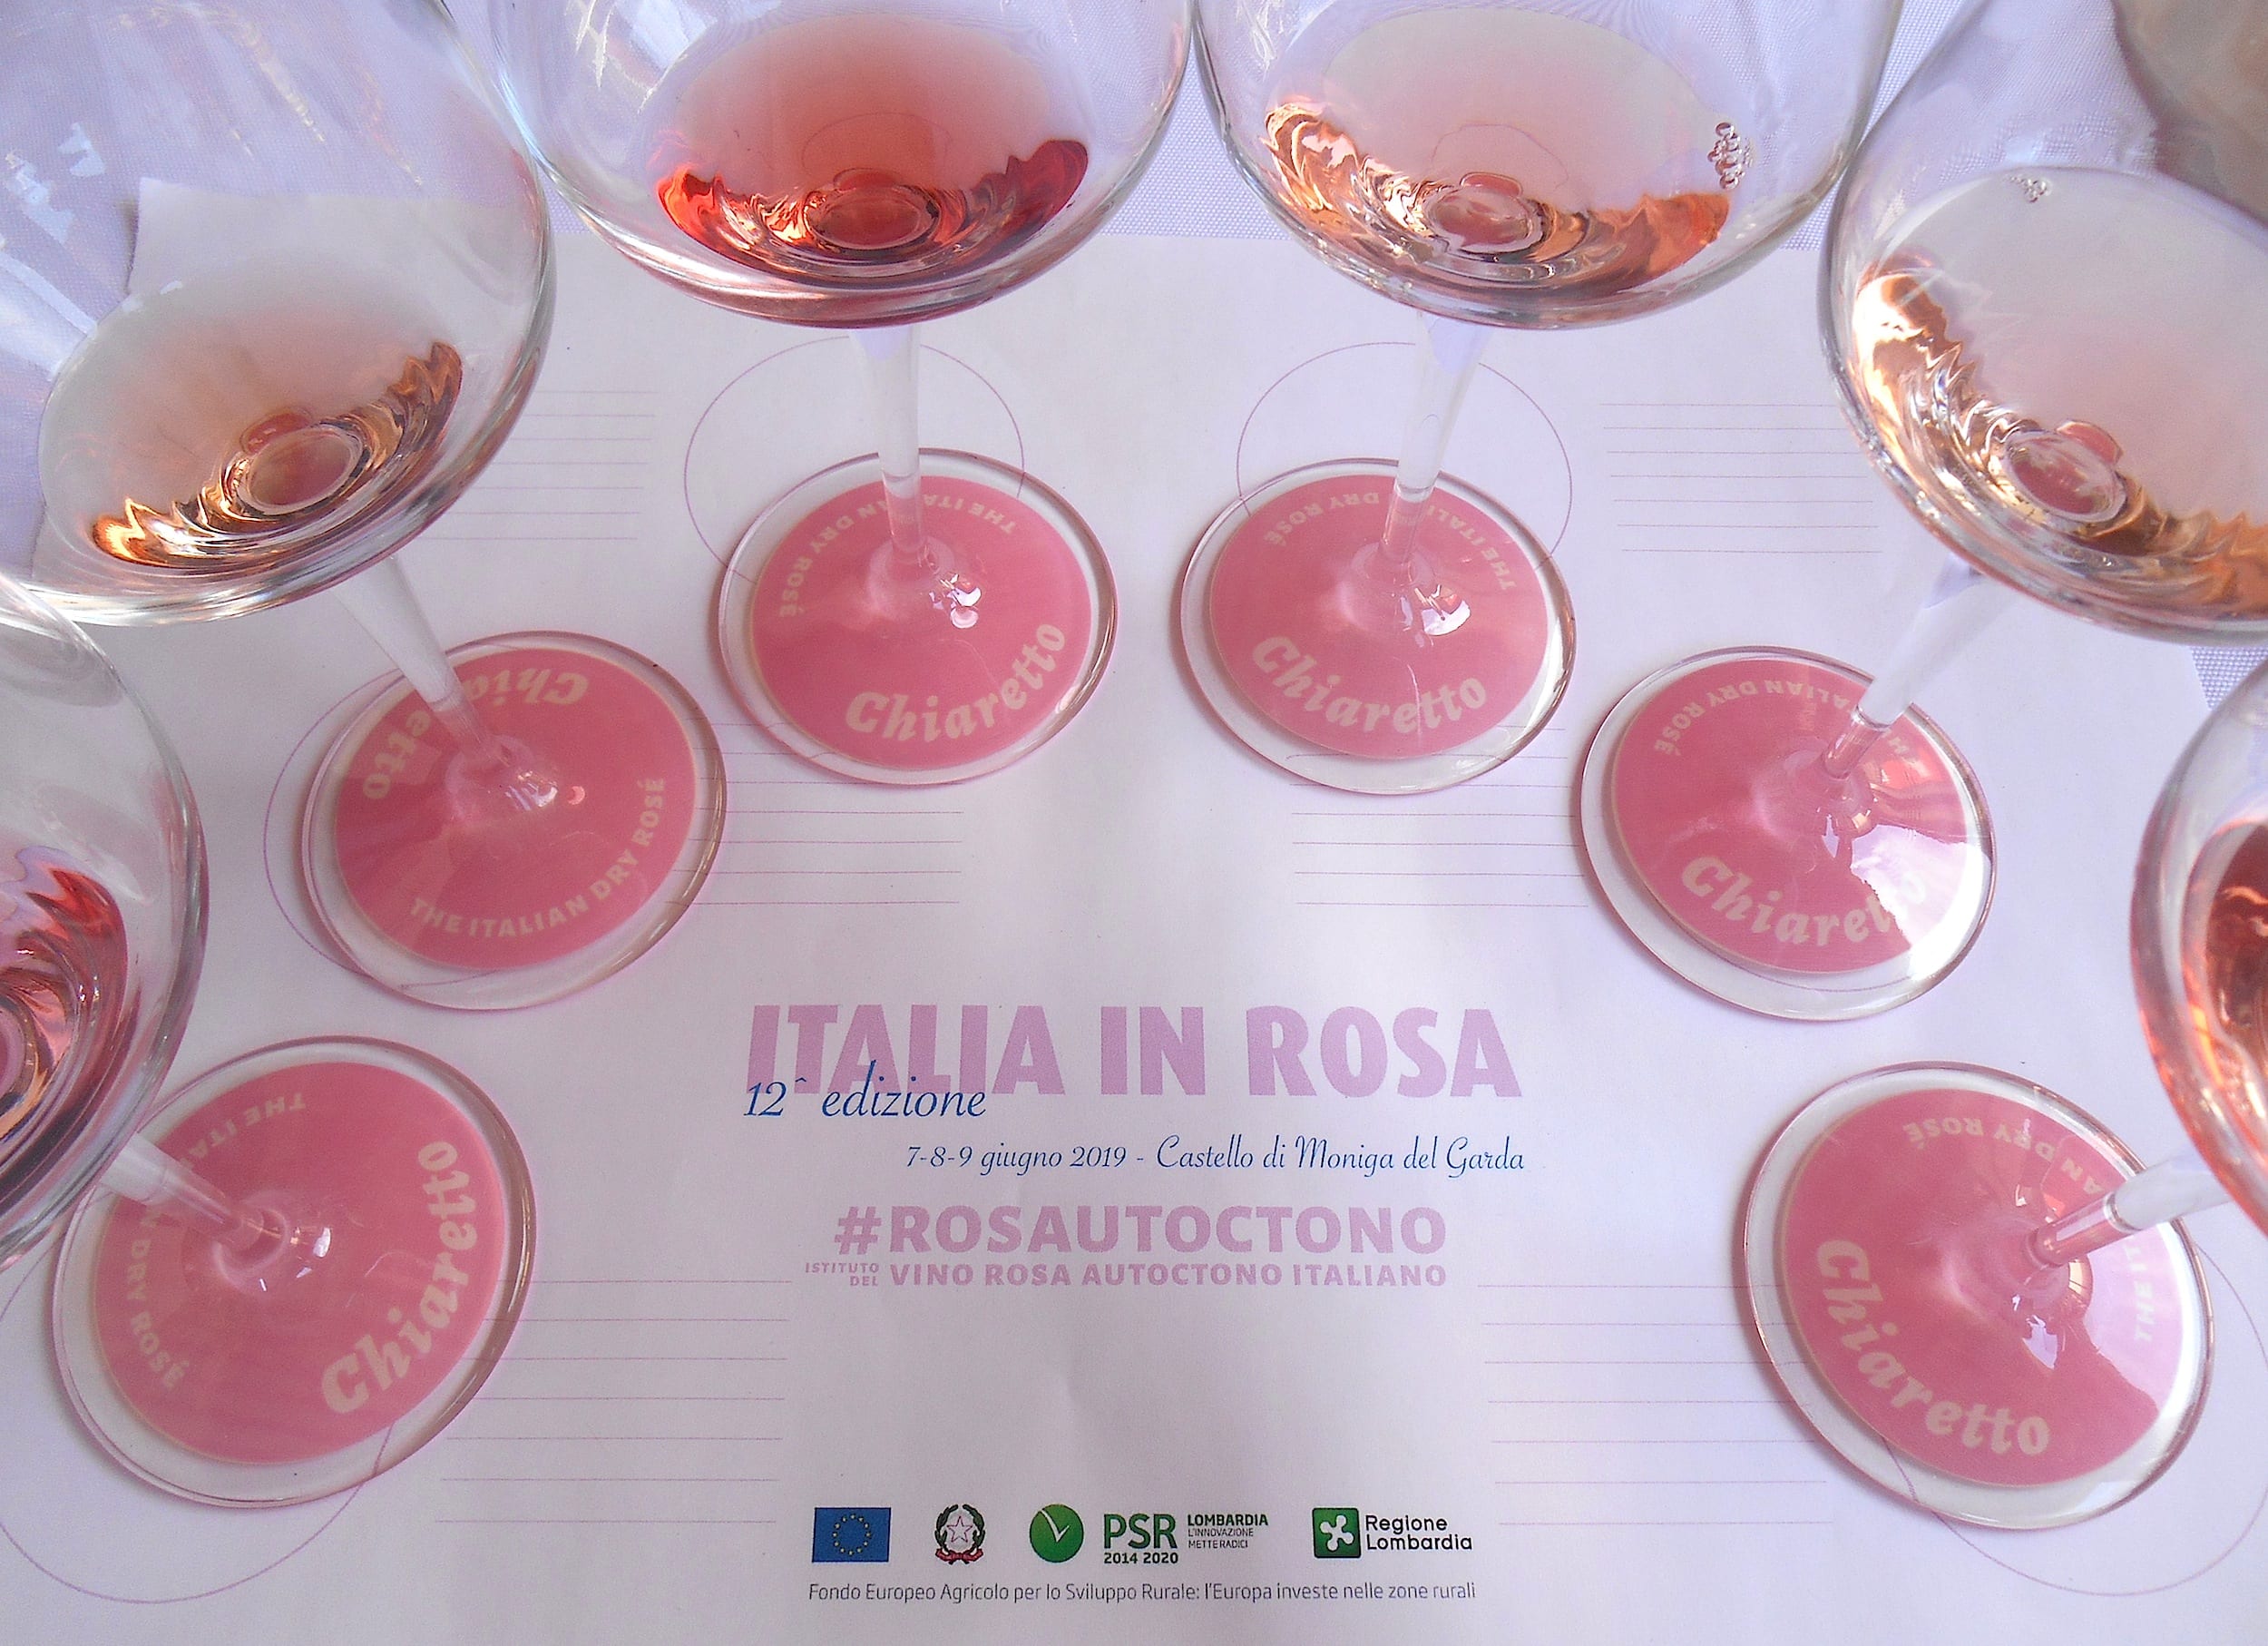 La tovaglietta di assaggio con i bicchieri di rosato di Italia in Rosa 2019